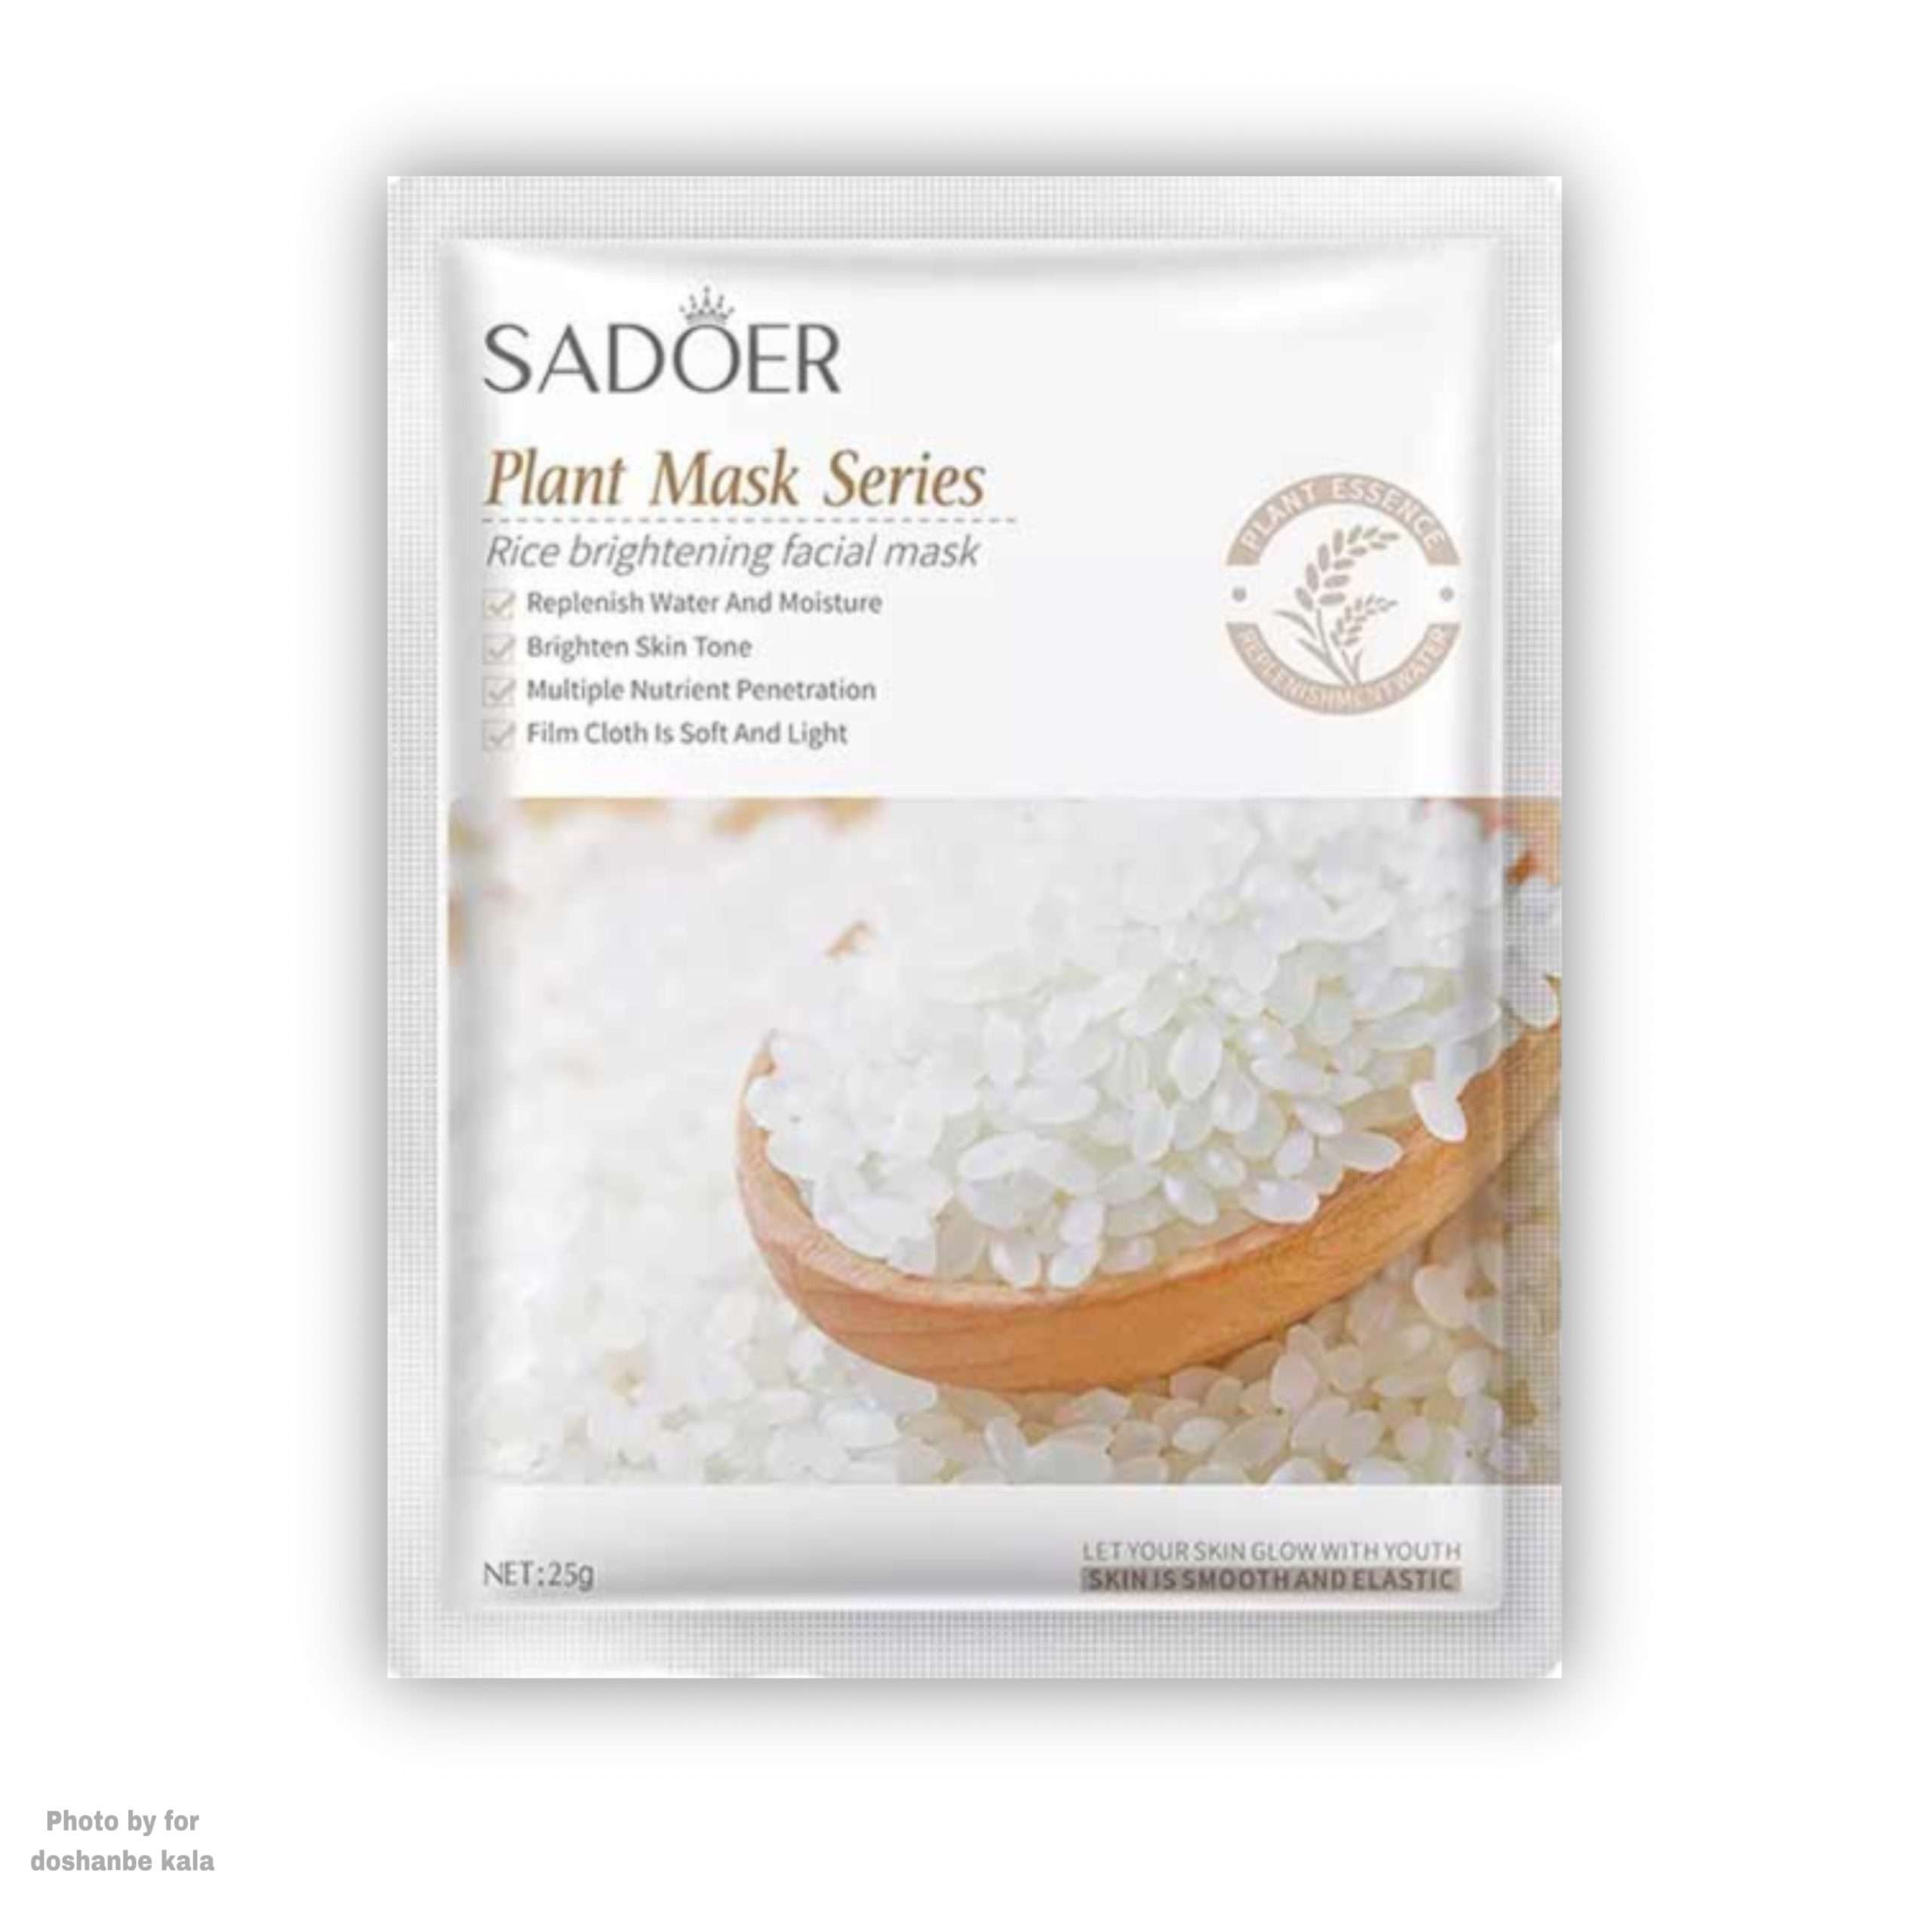 خرید انلاین ماسک صورت ورقه ای برنج SADOER در وبسایت دوشنبه کالا